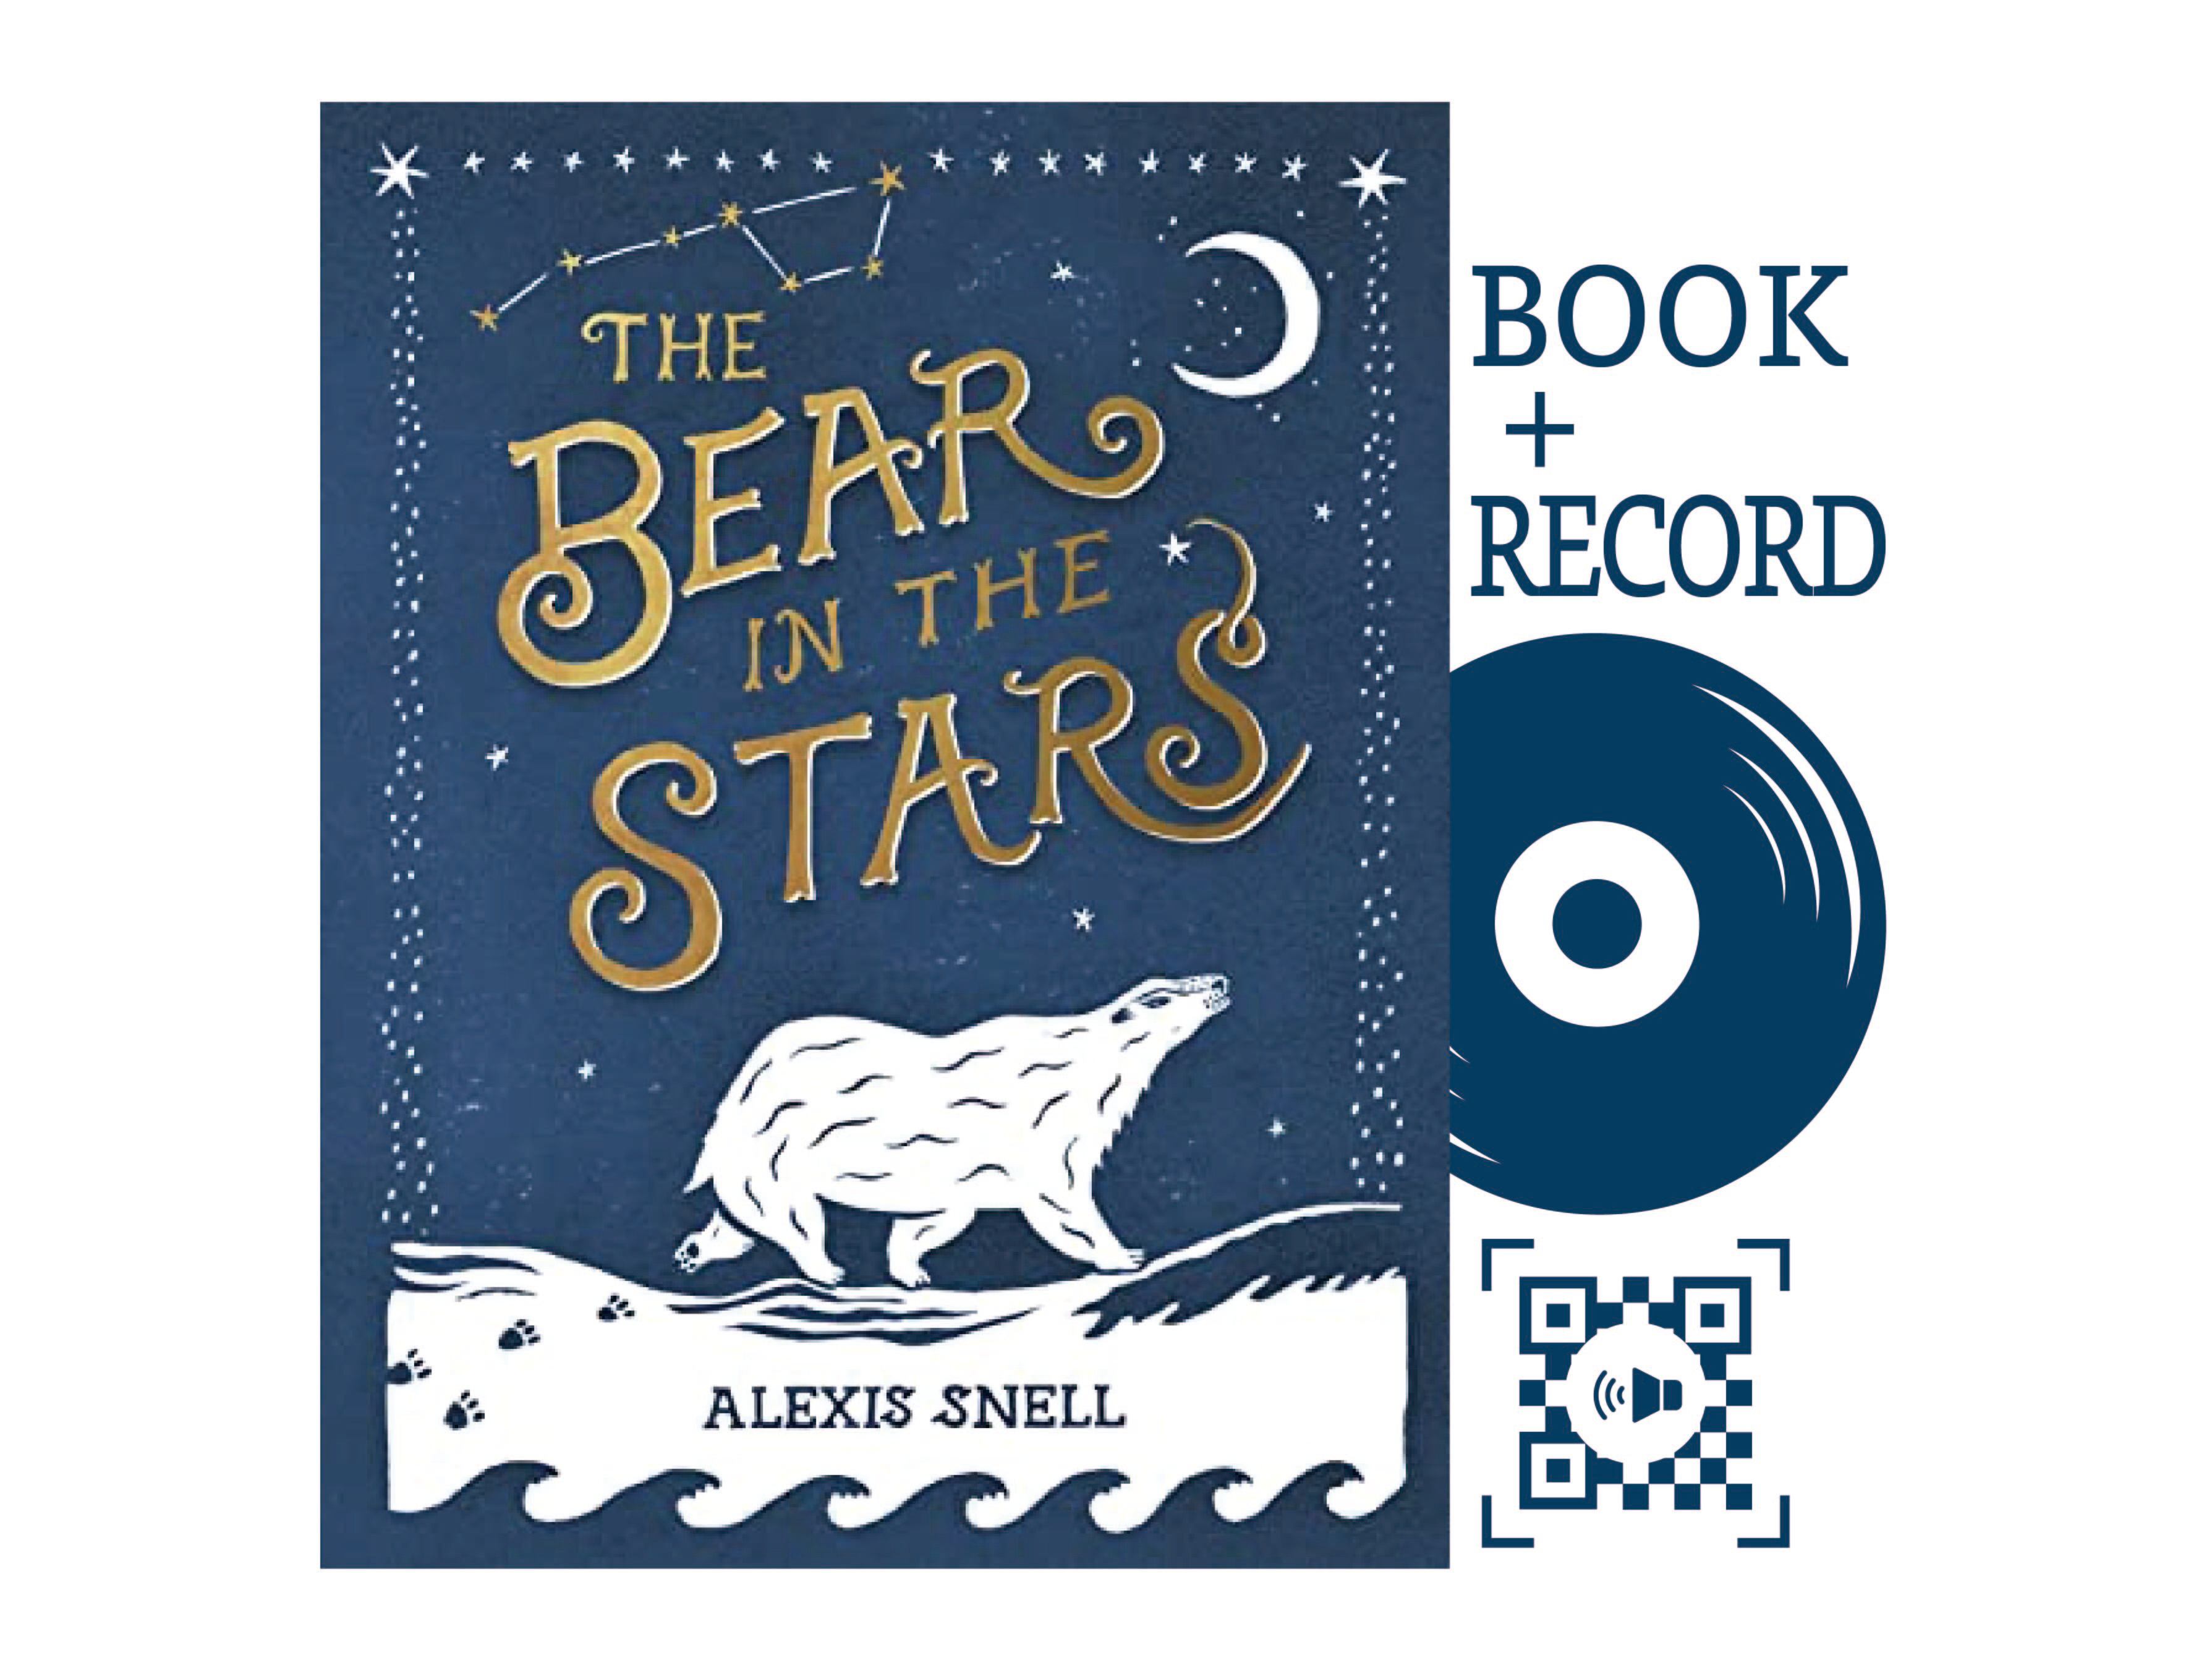 絵本『THE BEAR IN THE STARS』レコード付き